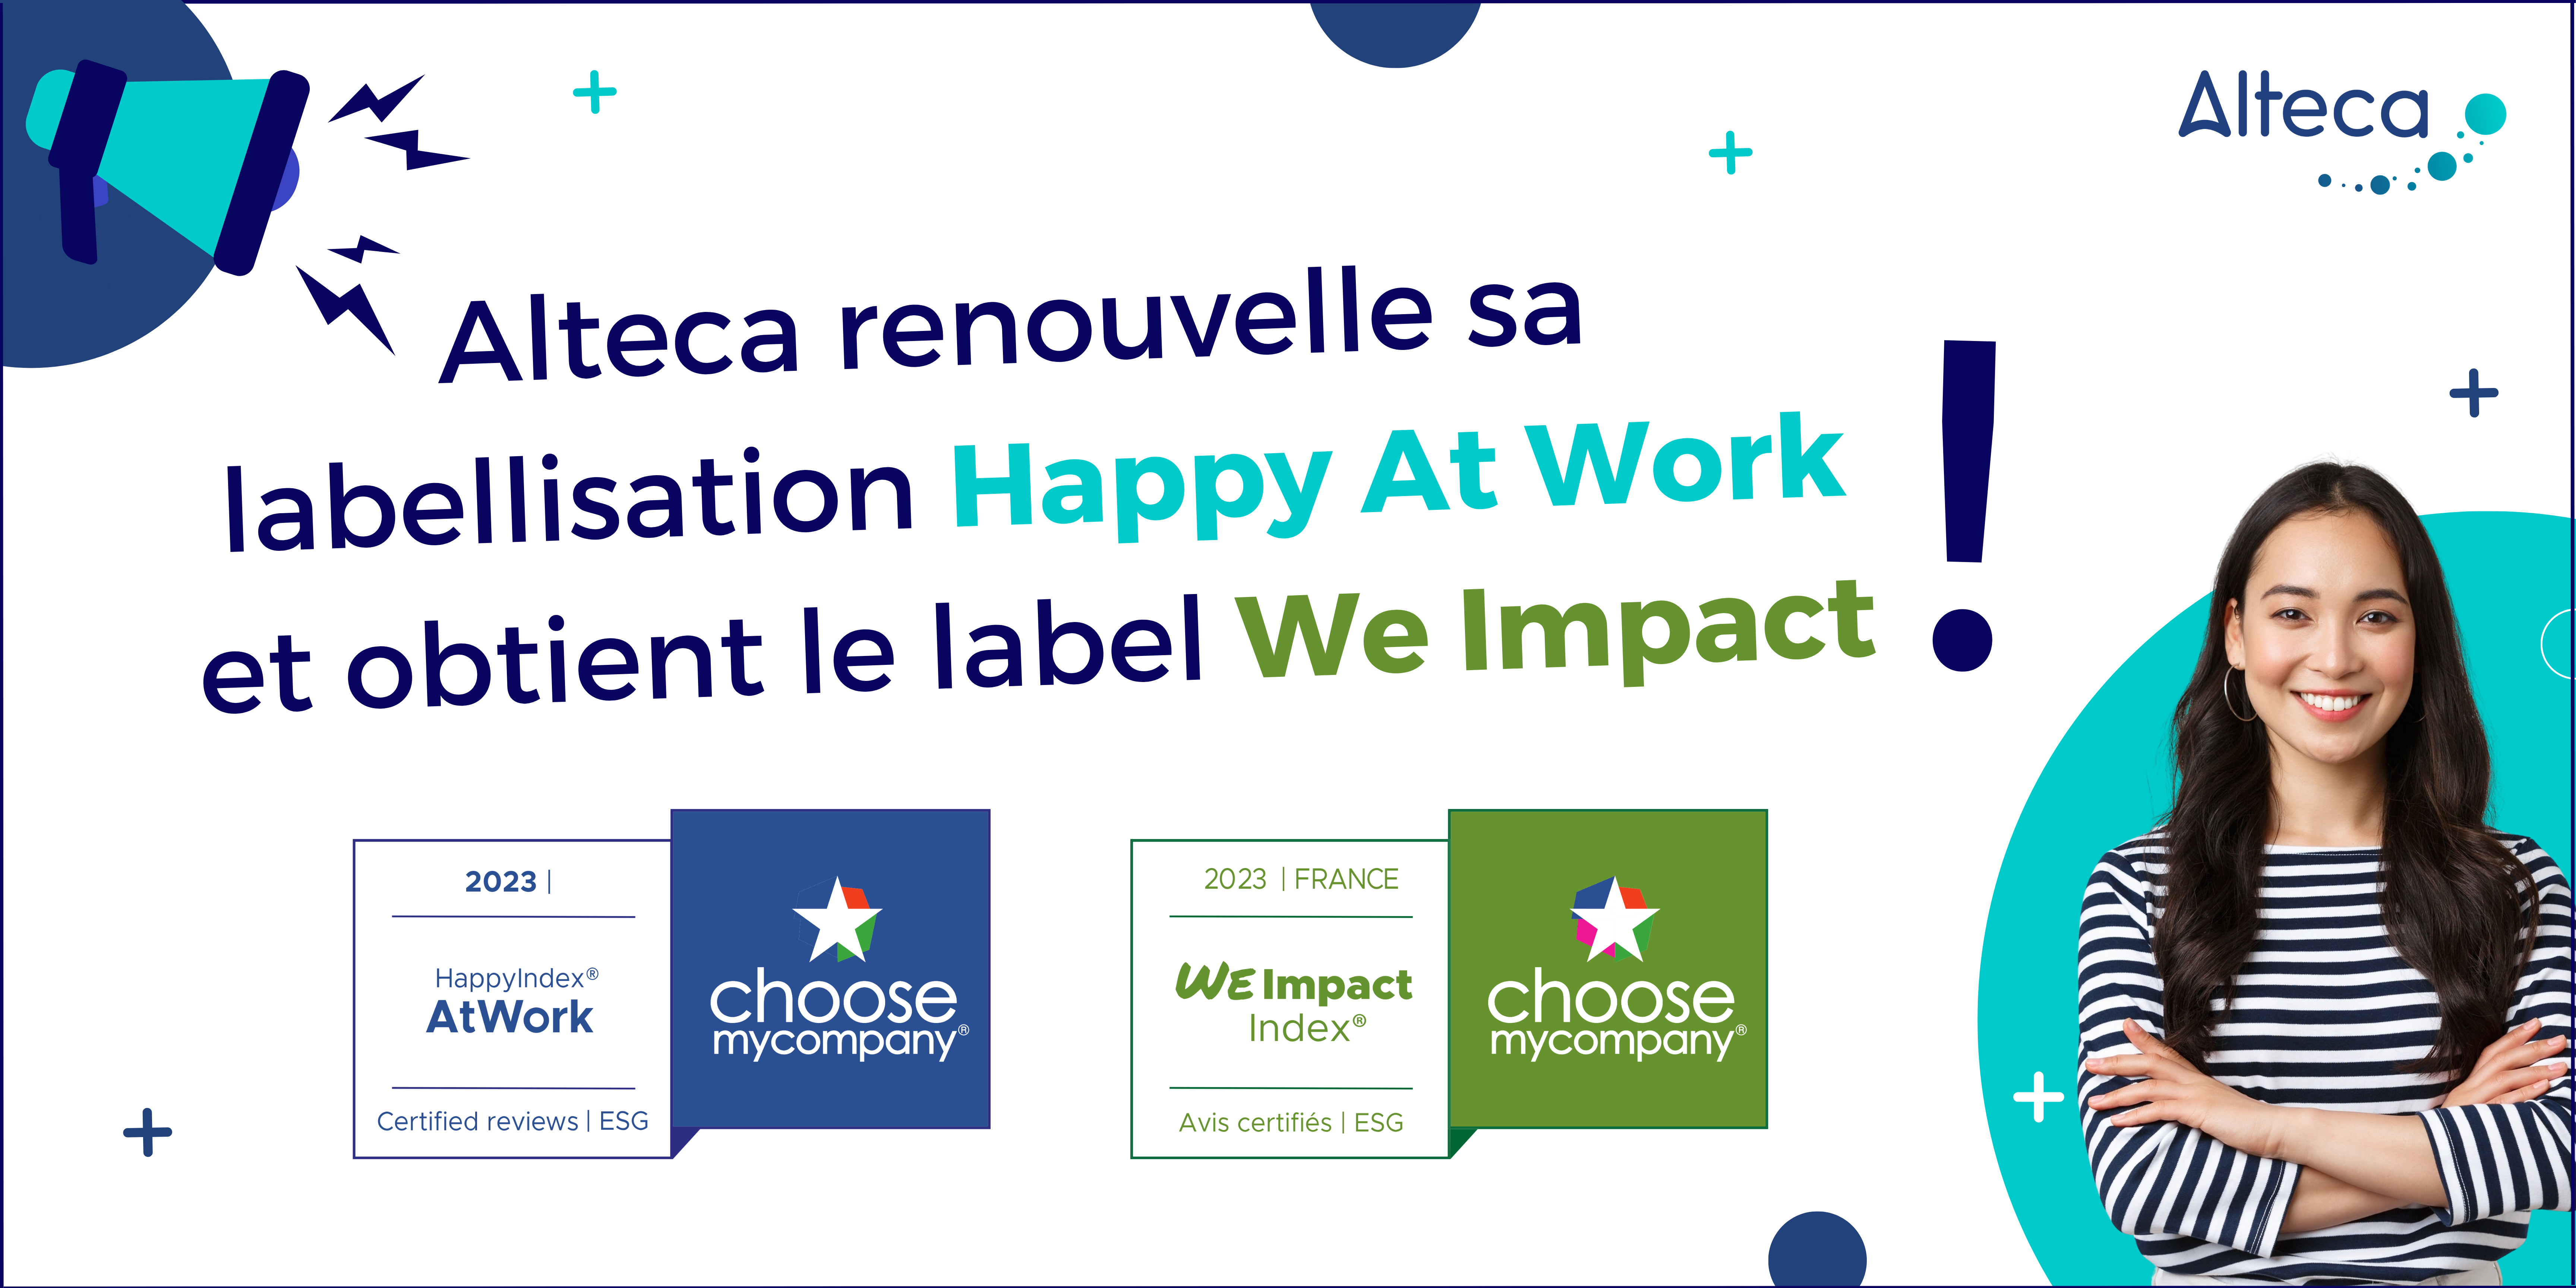 Alteca renouvelle sa labellisation Happy At Work et obtient le label We Impact